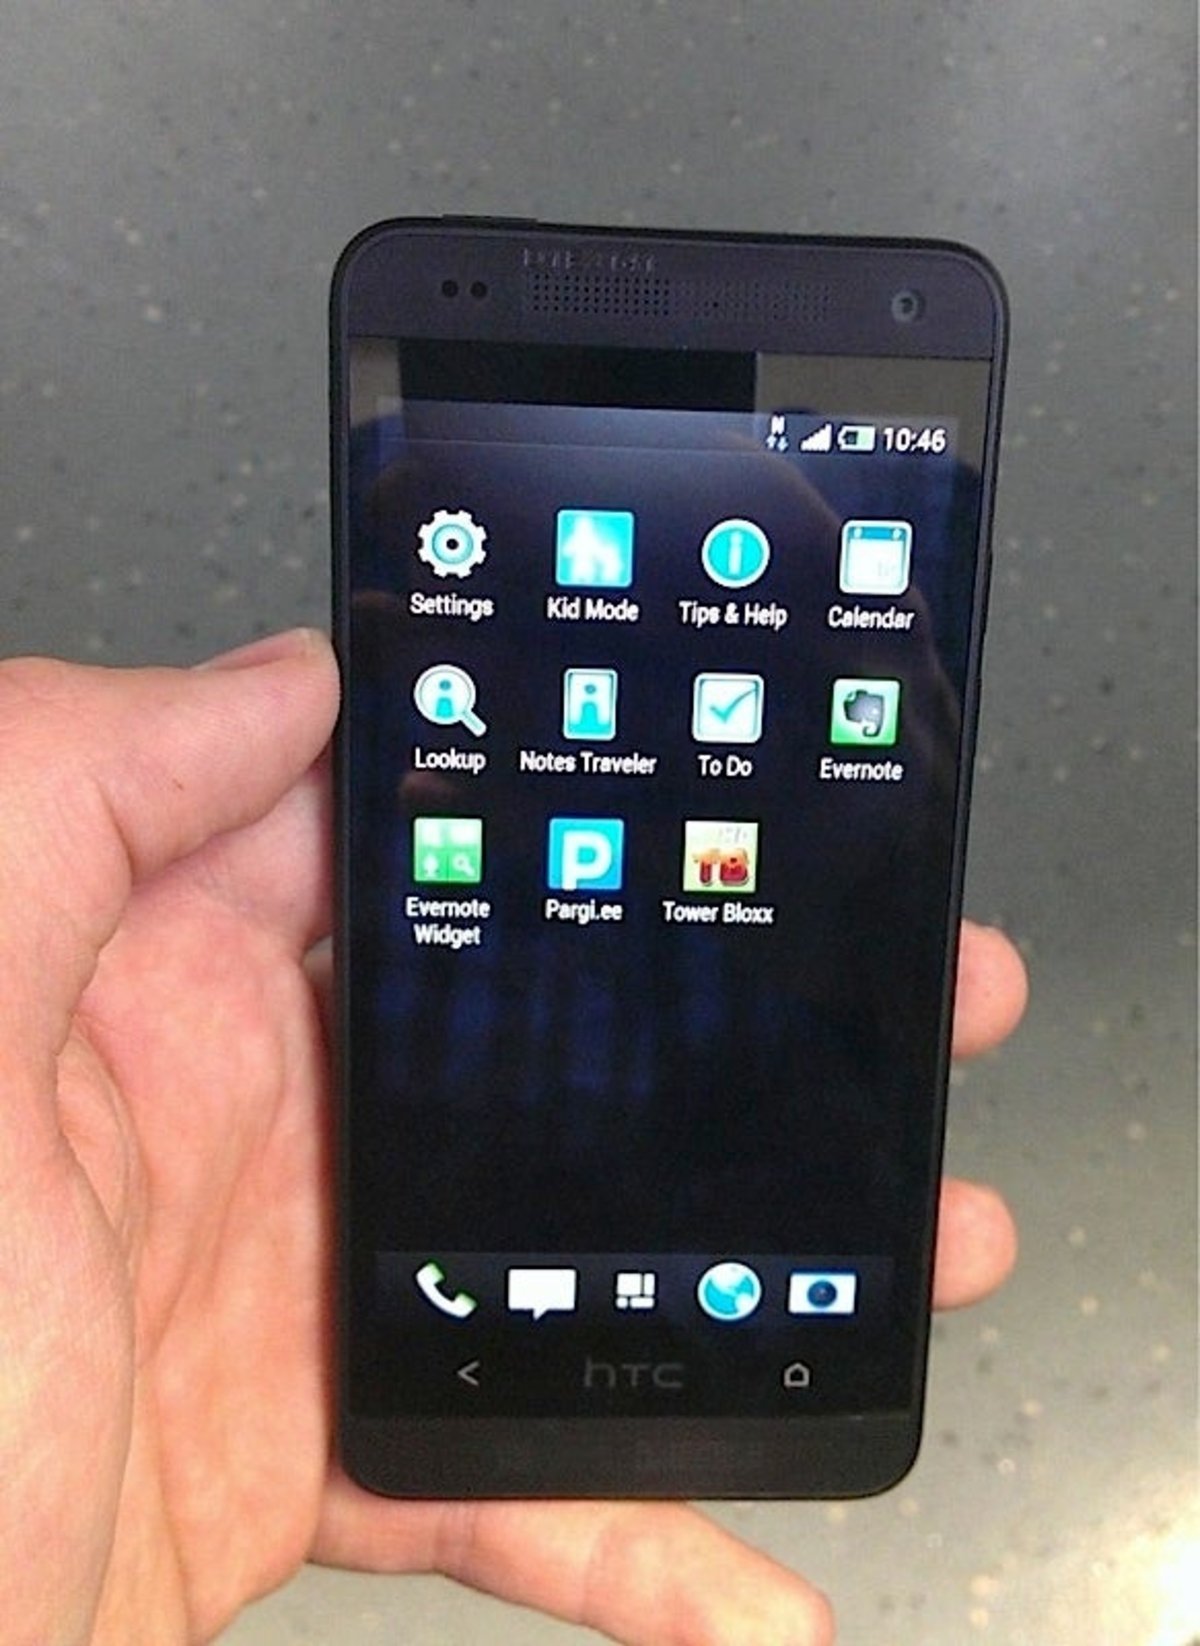 Aparece filtrado con todo lujo de detalles el HTC One Mini